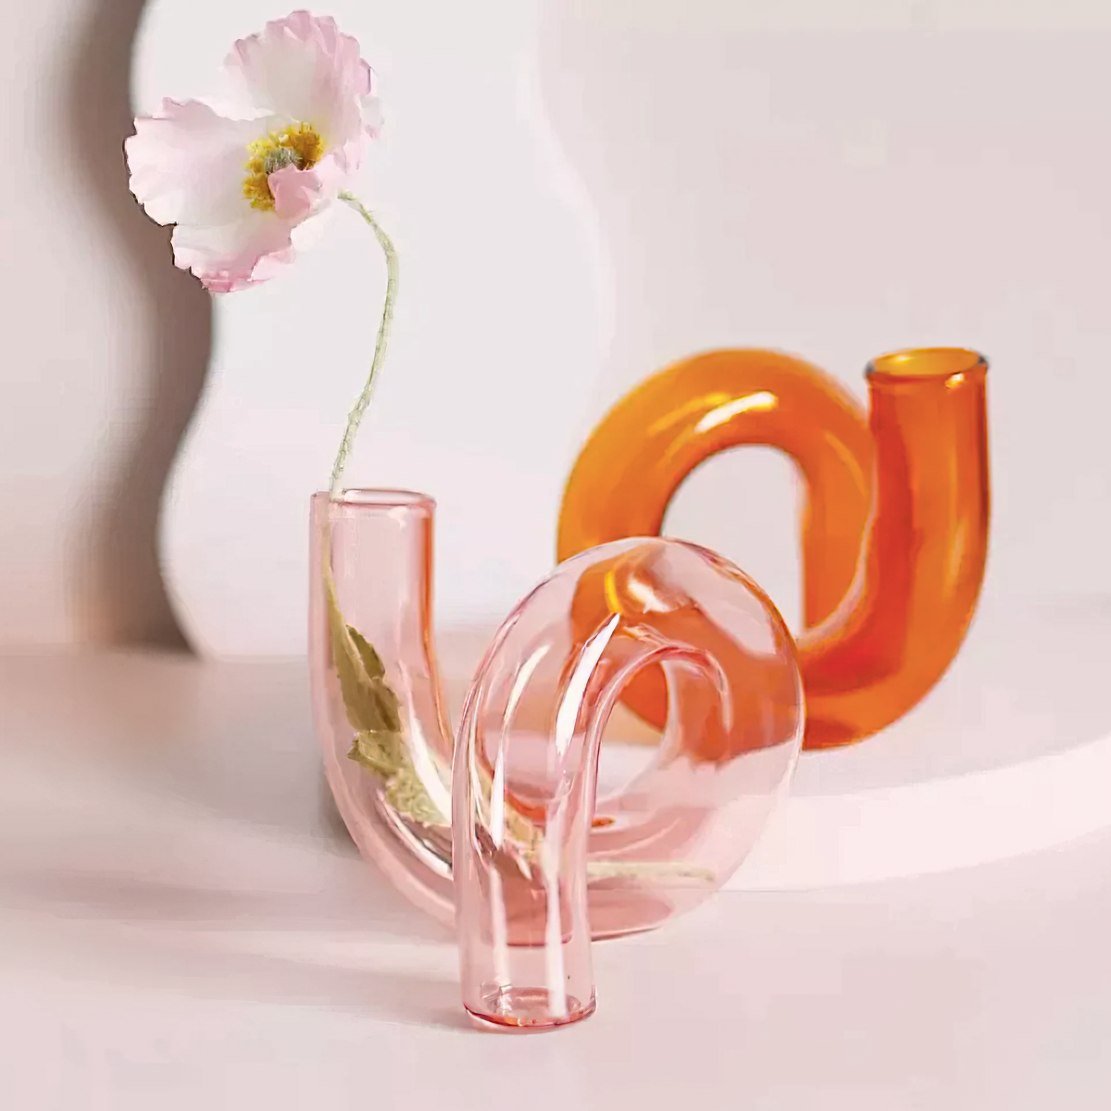 Pink & orange glass twist flower vase